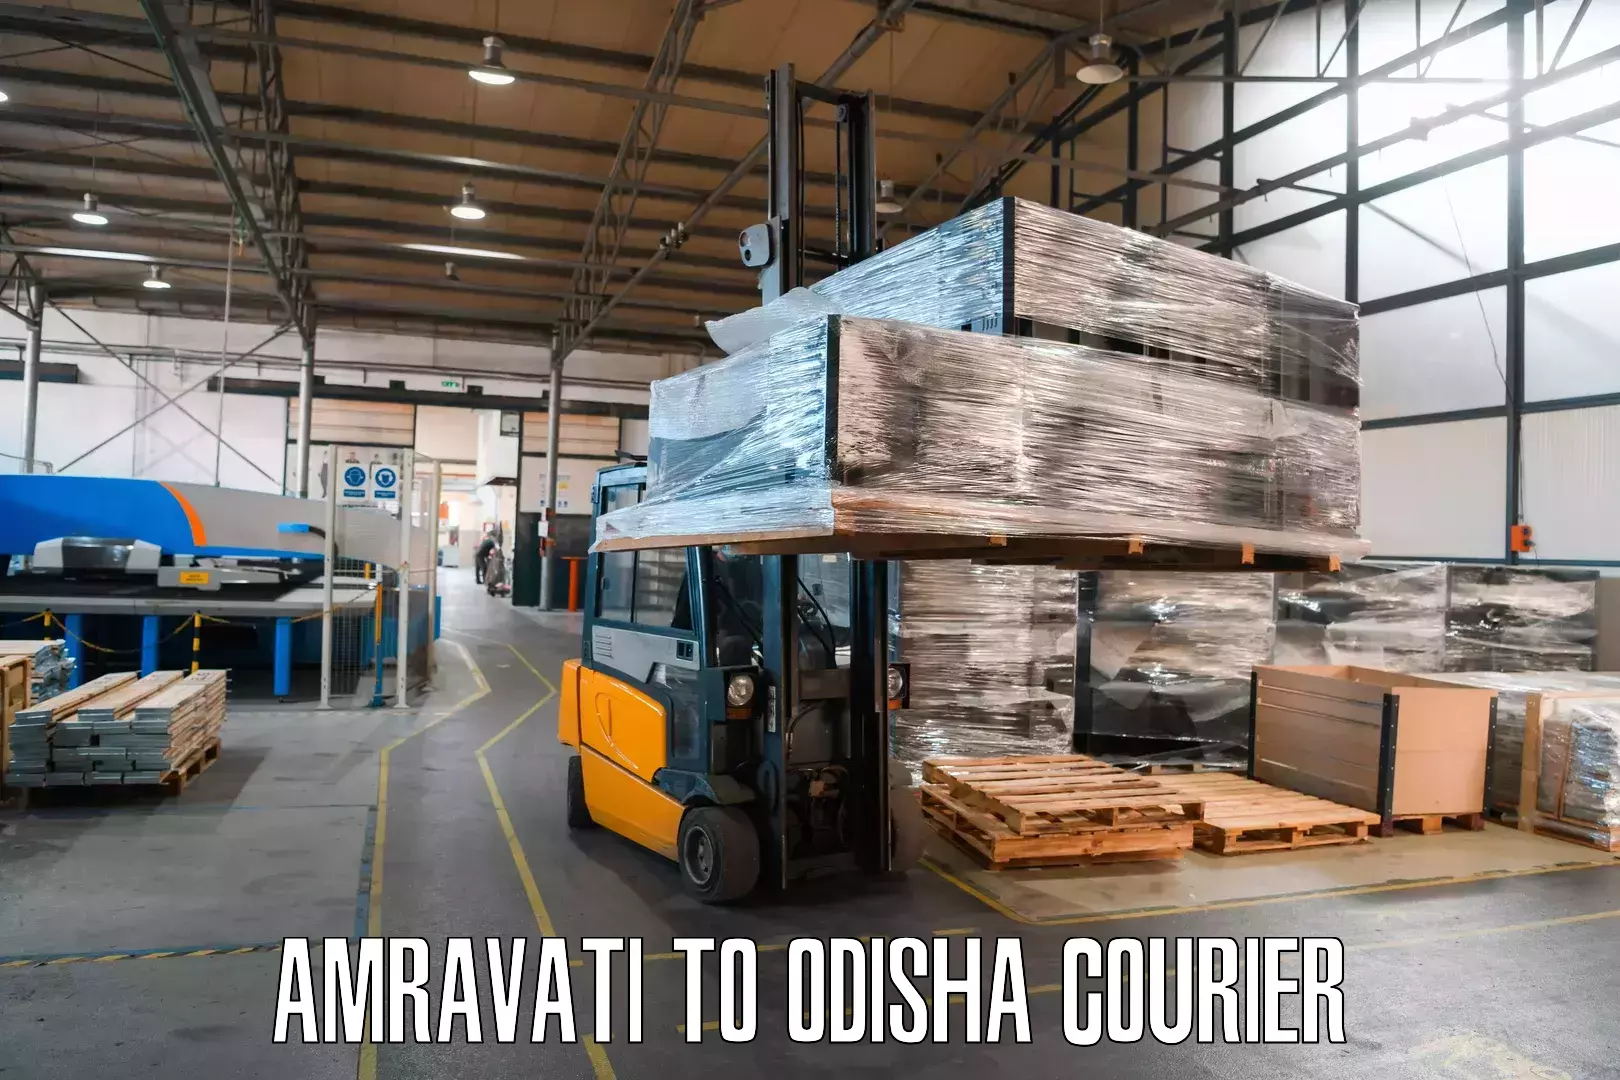 Courier service comparison Amravati to Bargarh